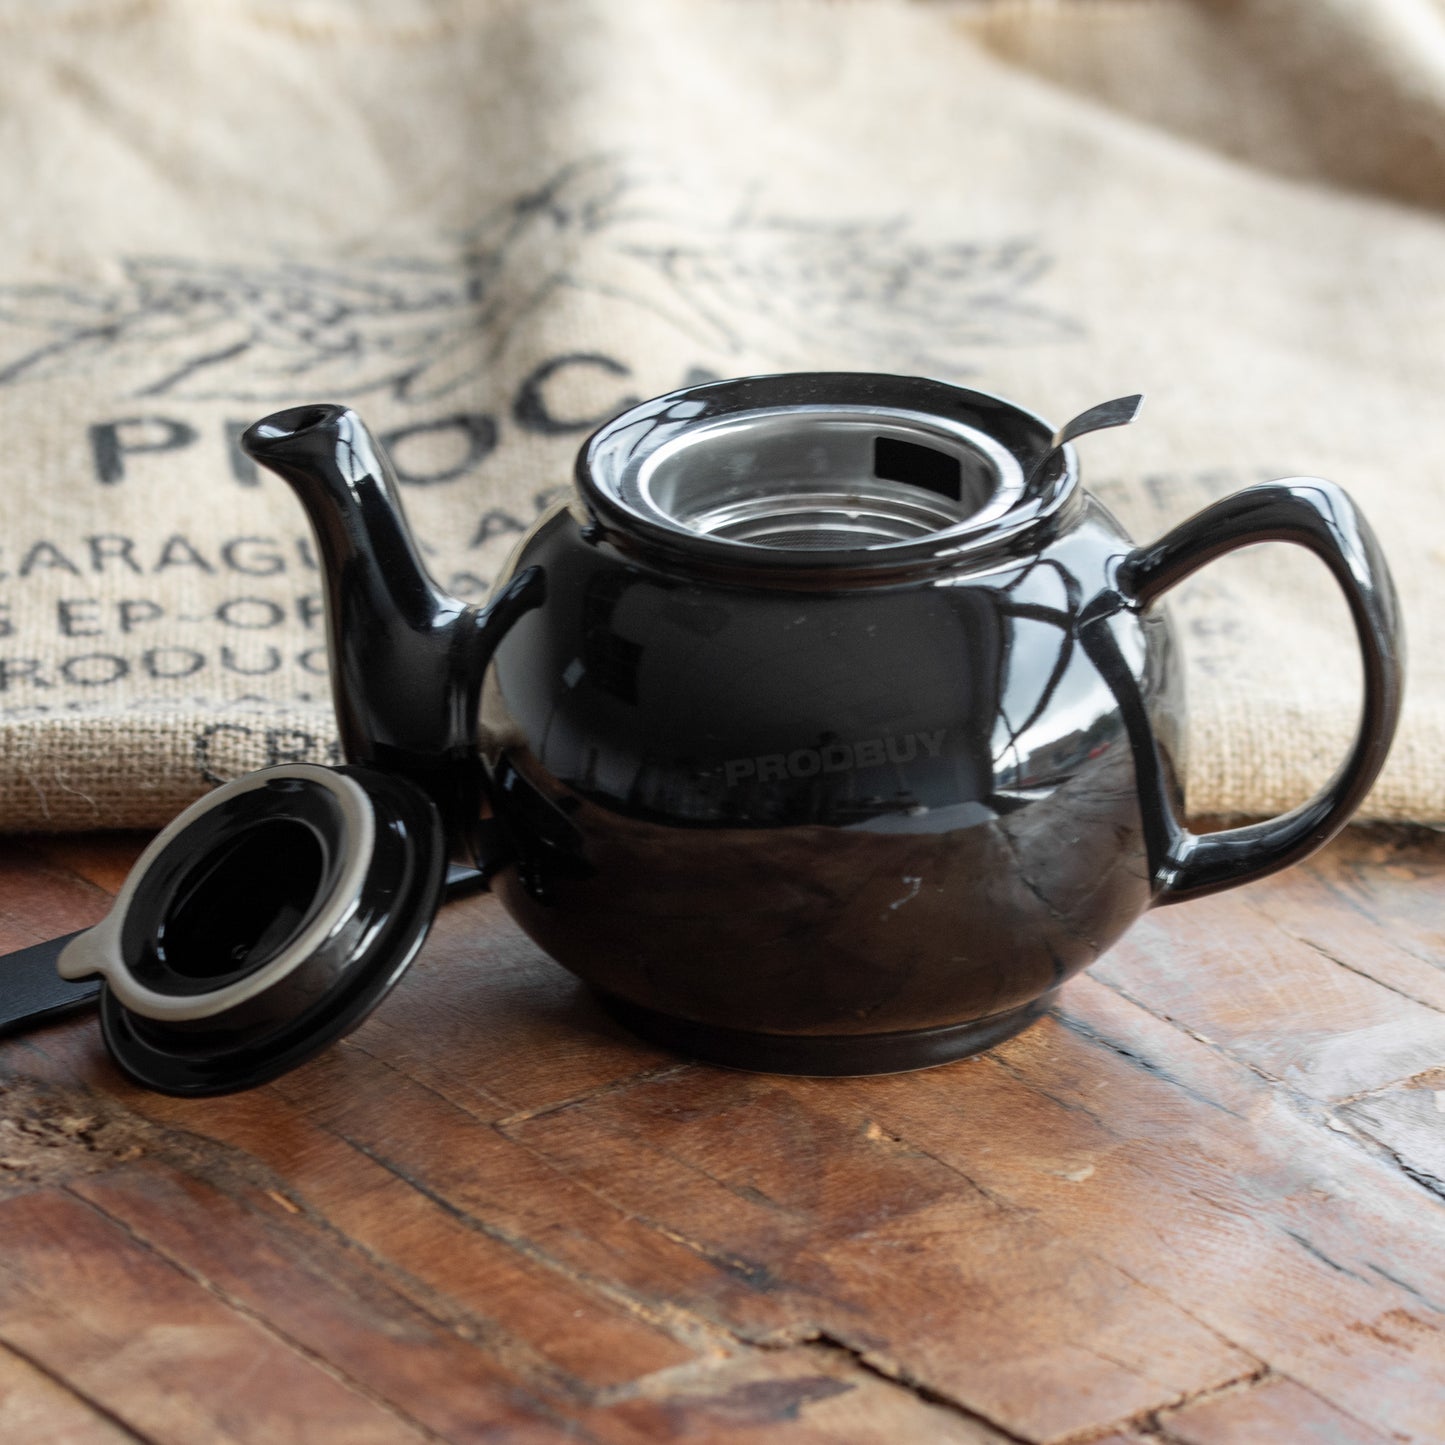 Black 1 Litre Ceramic Teapot & Infuser Basket